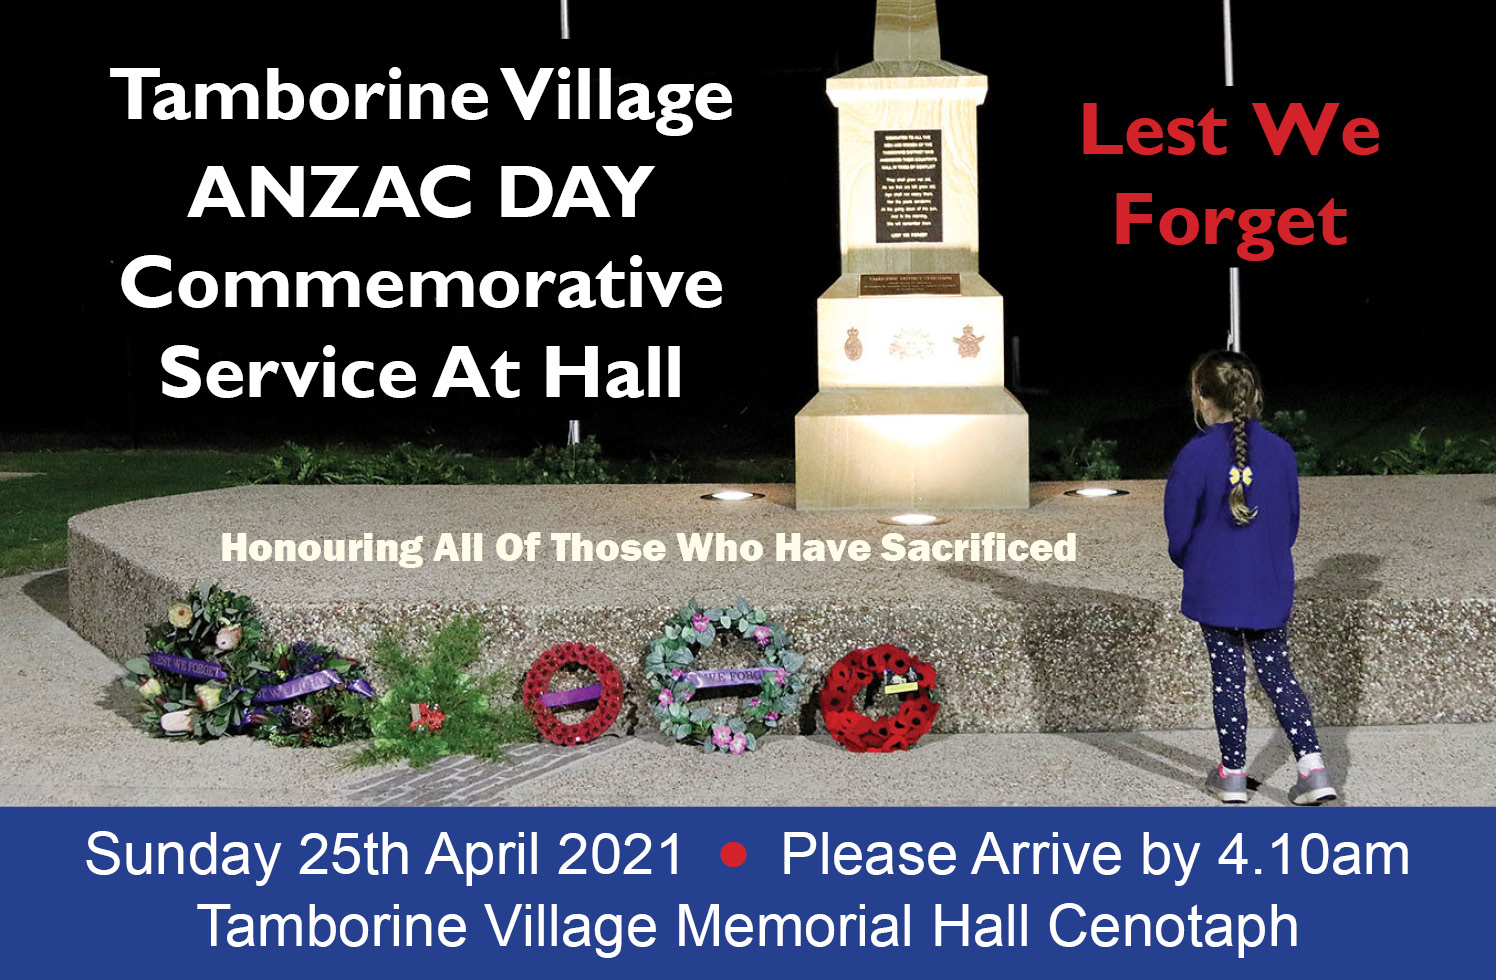 Tamborine Village Anzac Day Commemorative Service